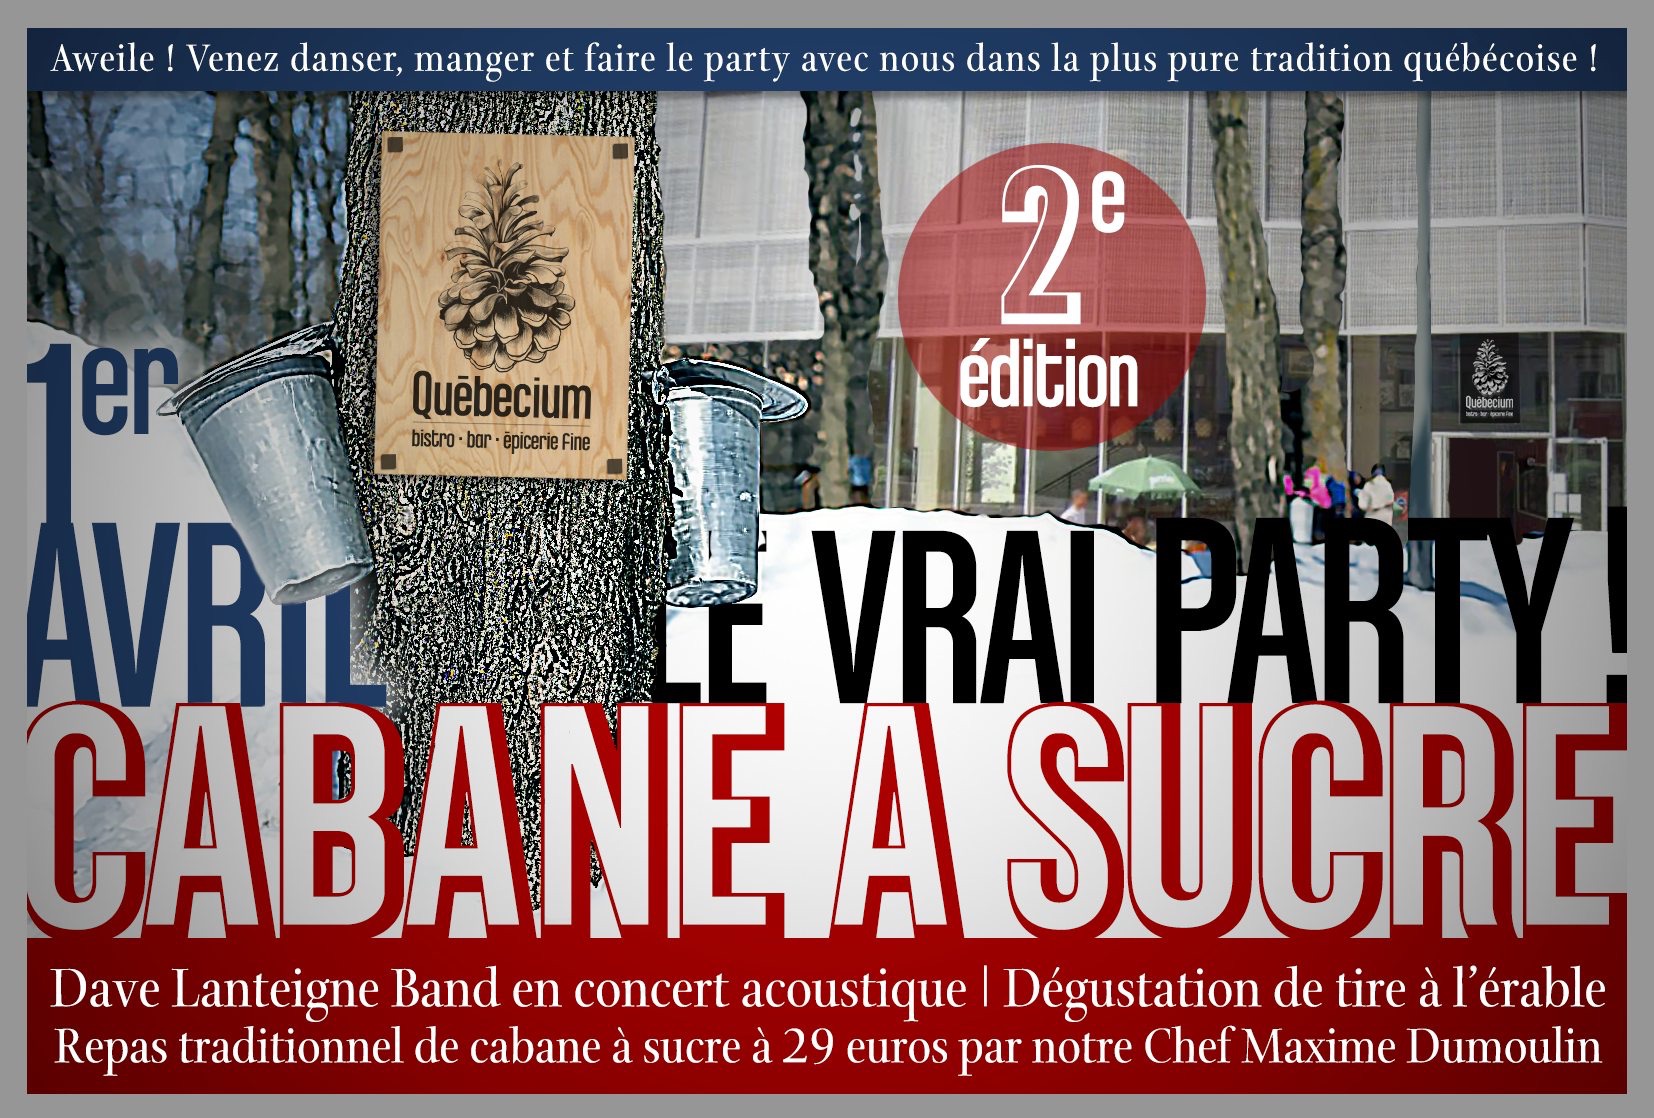 Le Vrai Party Cabane à sucre ! - 2nd edition